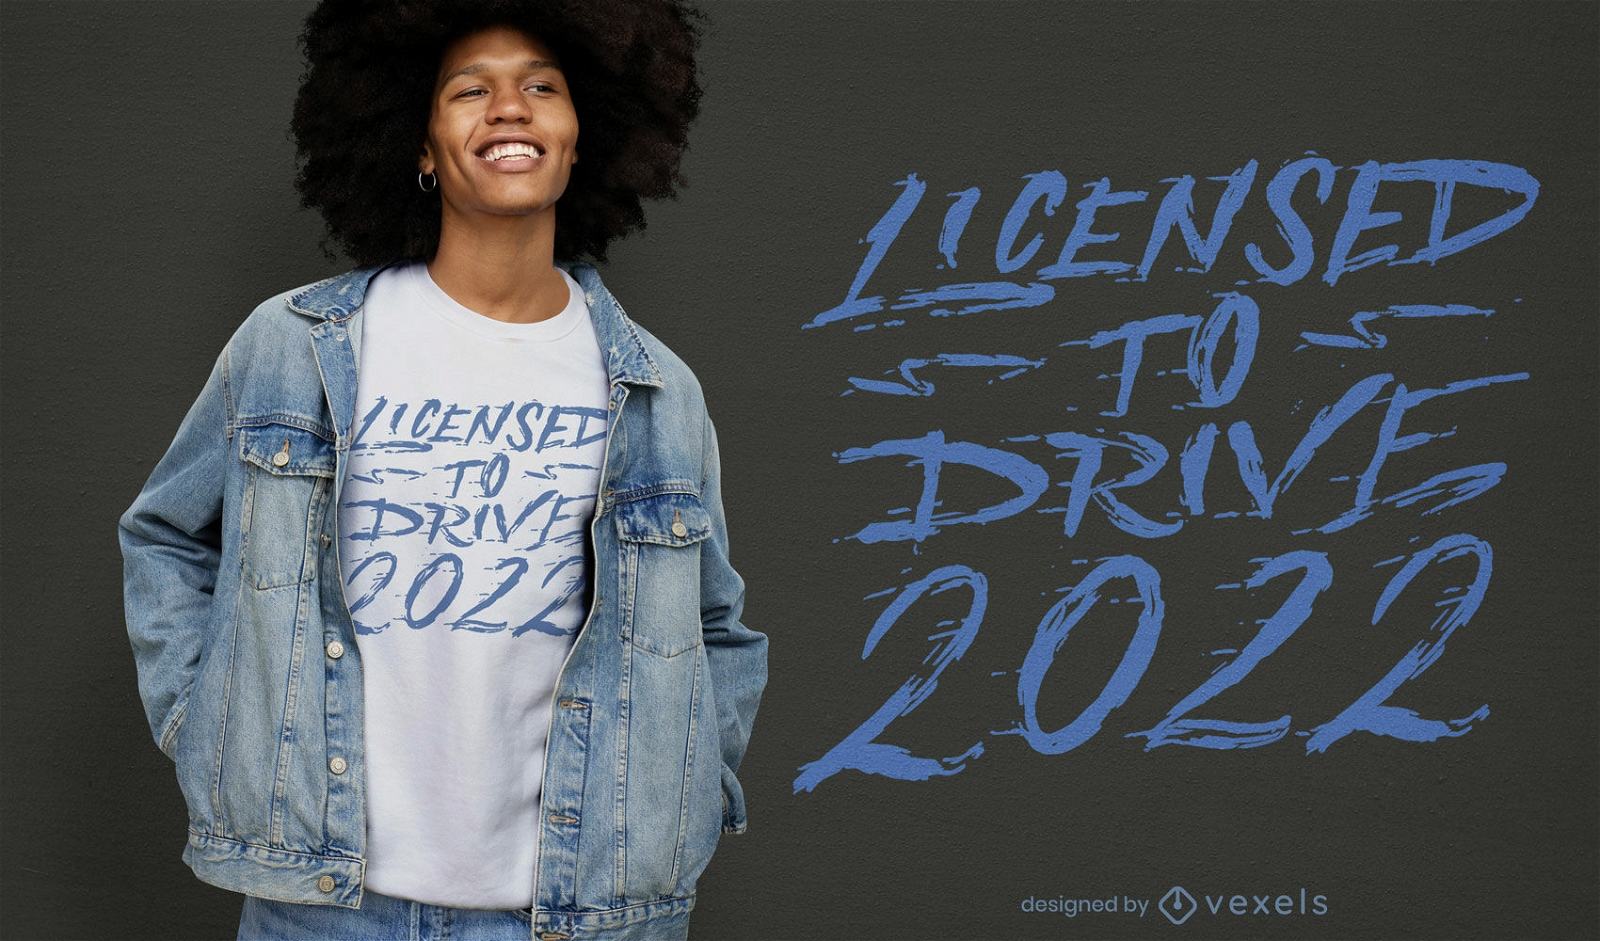 Licencia para conducir dise?o de camiseta 2022